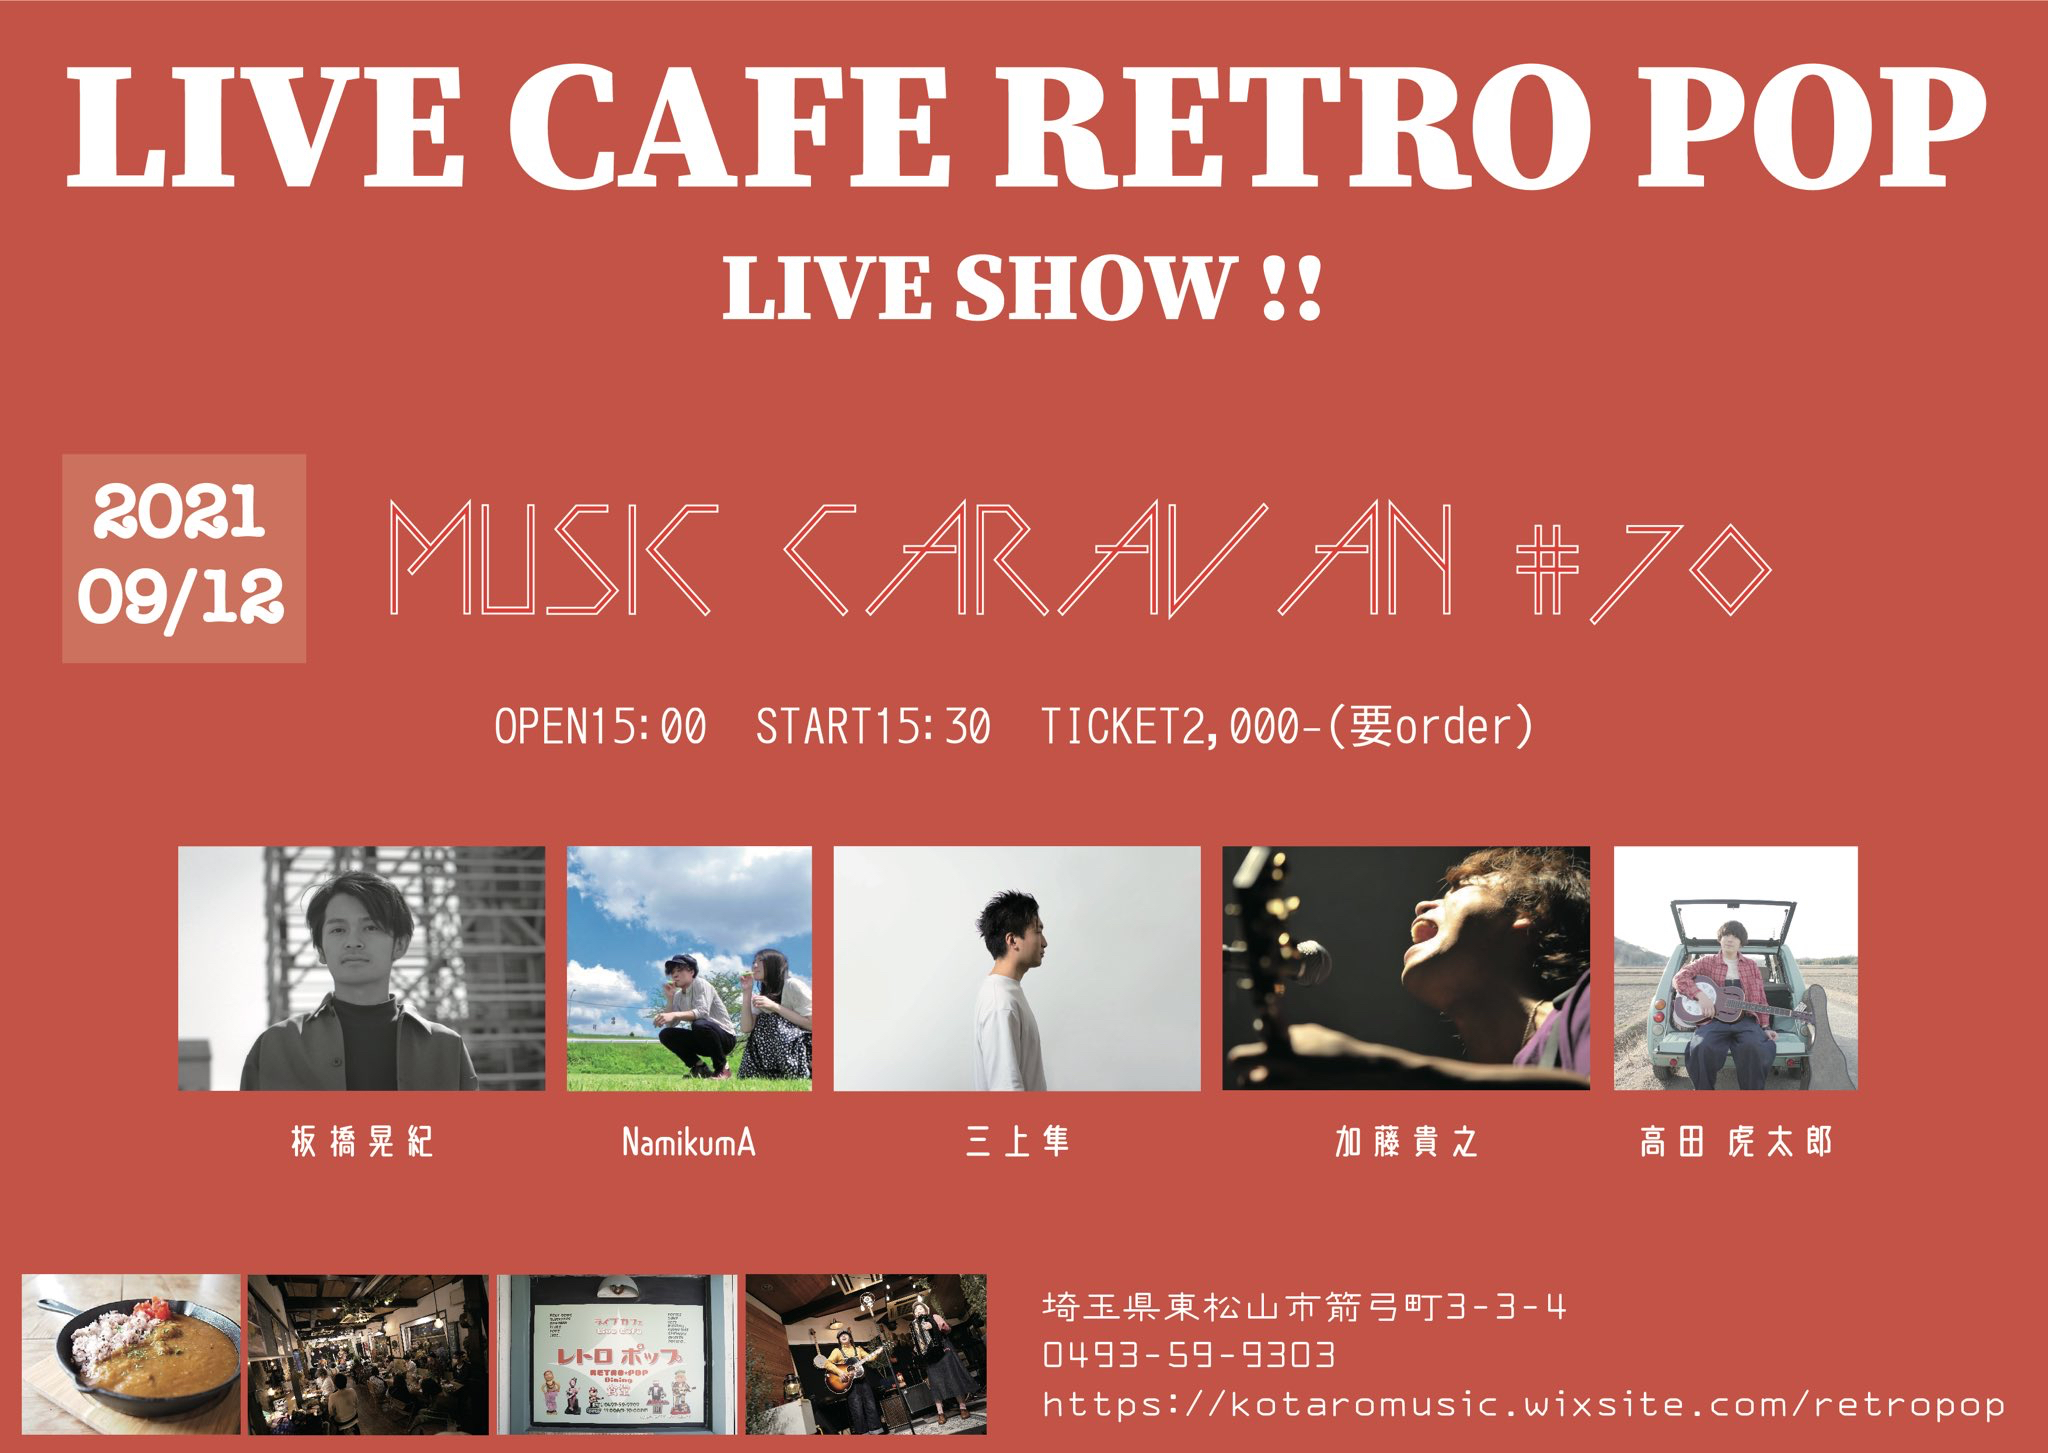 LIVE CAFE RETRO POP LIVE SHOW!!